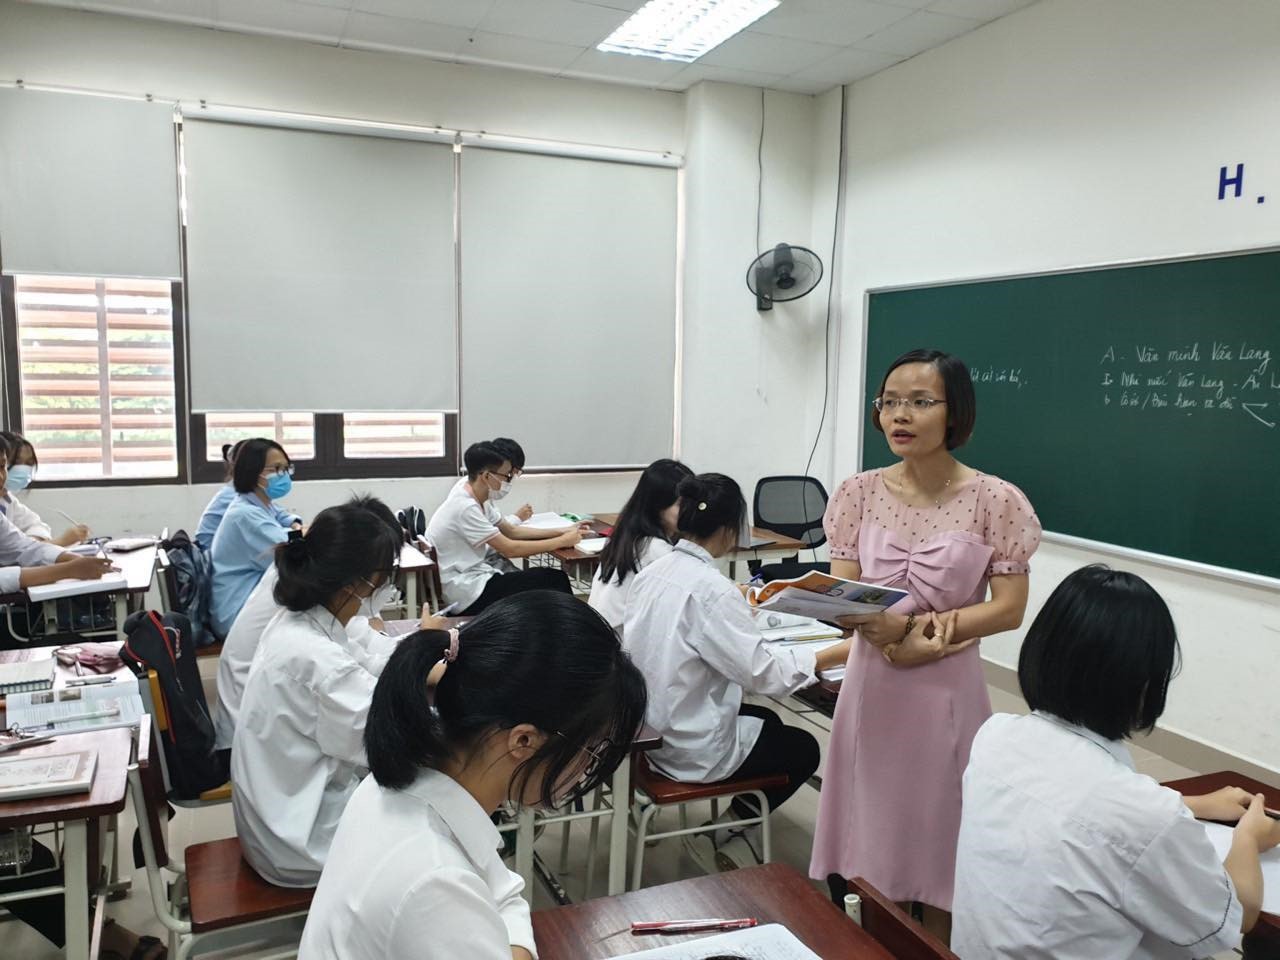 Từ 30/5, lương giáo viên sẽ tương ứng với hạng chức danh nghề nghiệp được bổ nhiệm. Ảnh: Việt Linh.